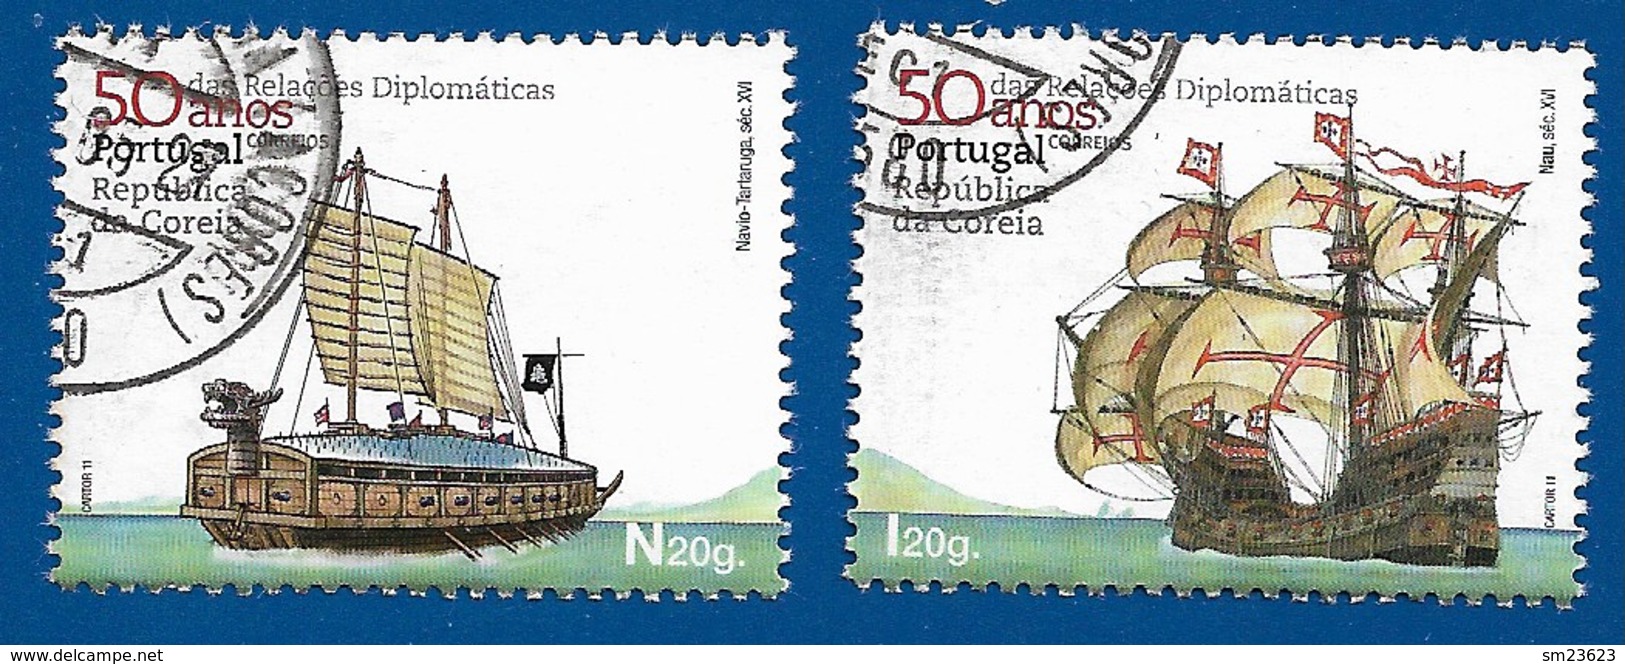 Portugal   2011  Mi.Nr. 3619 / 3620 , 50 Anos Das Relacöes Diplomaticas - Gestempelt / Fine Used / (o) - Gebraucht